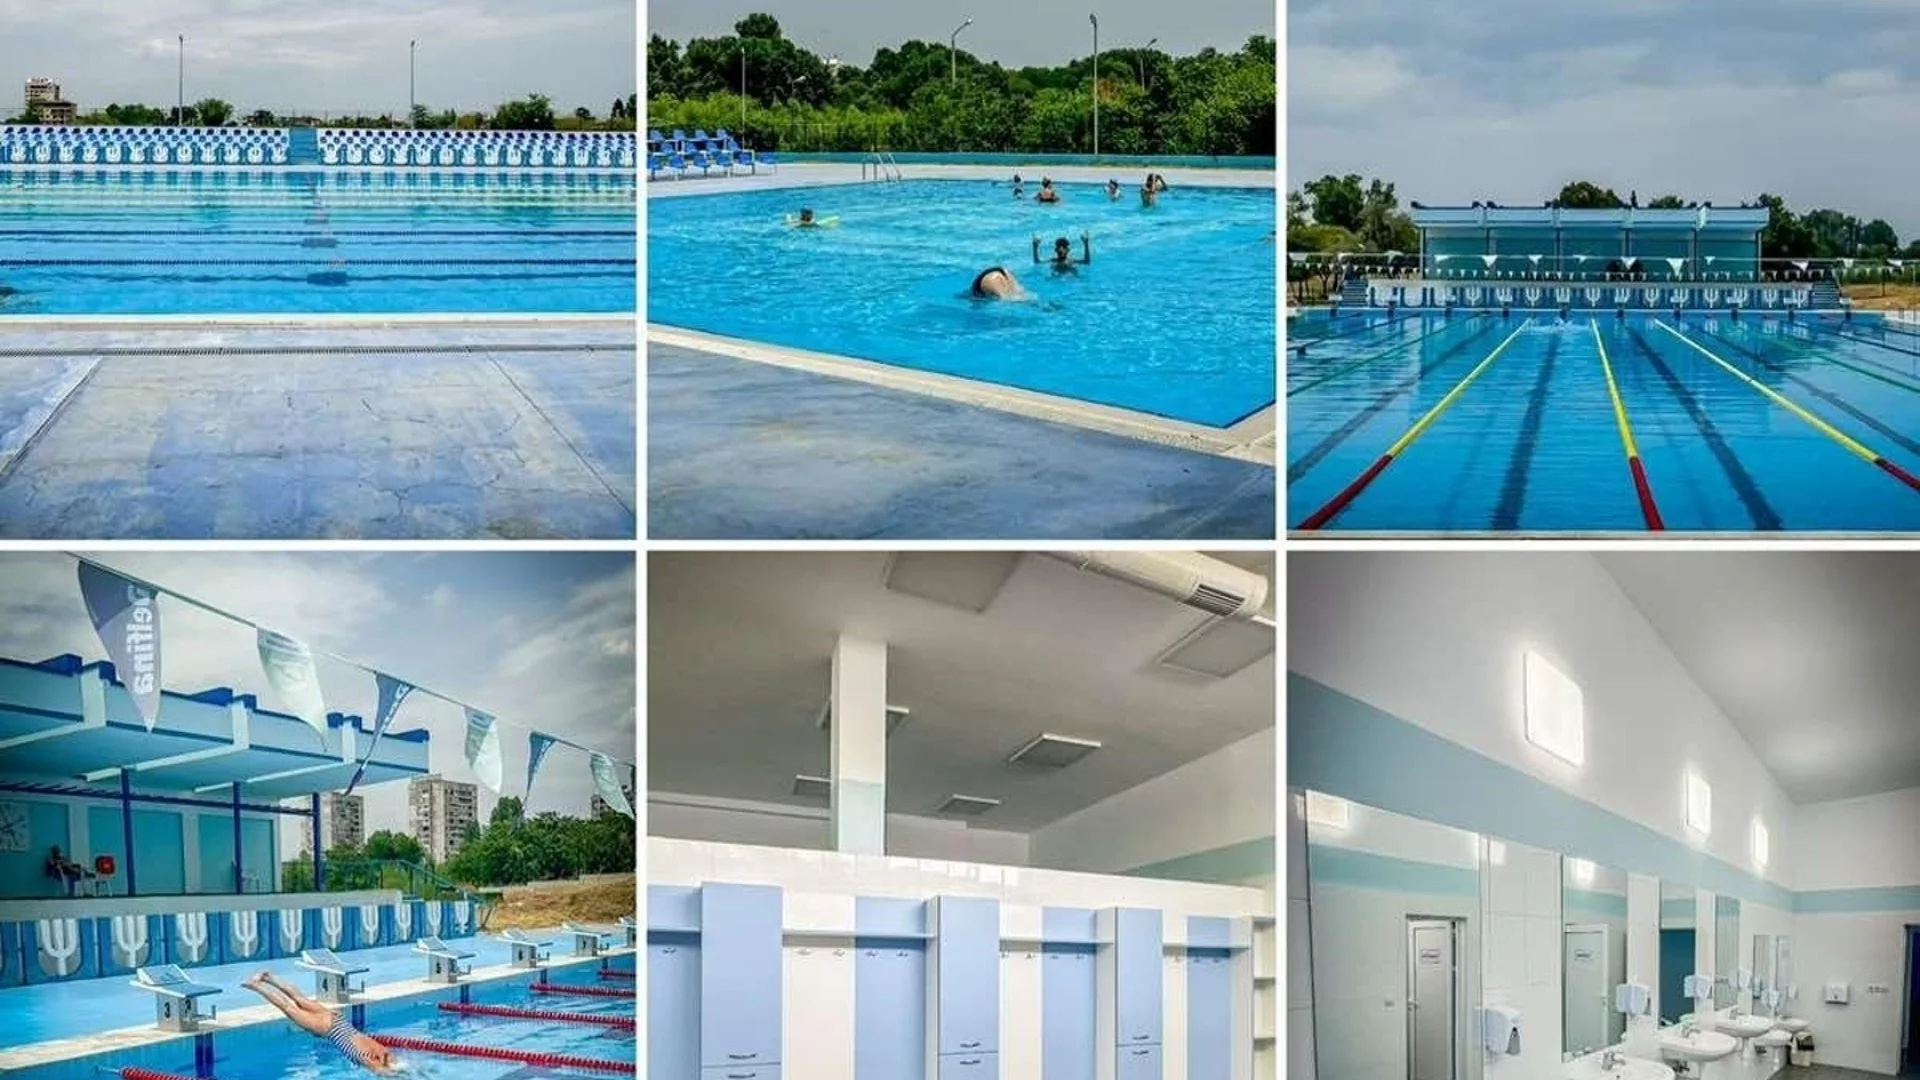 След обновяване: Отвори врати плувен басейн “Балона” в Пазарджик 